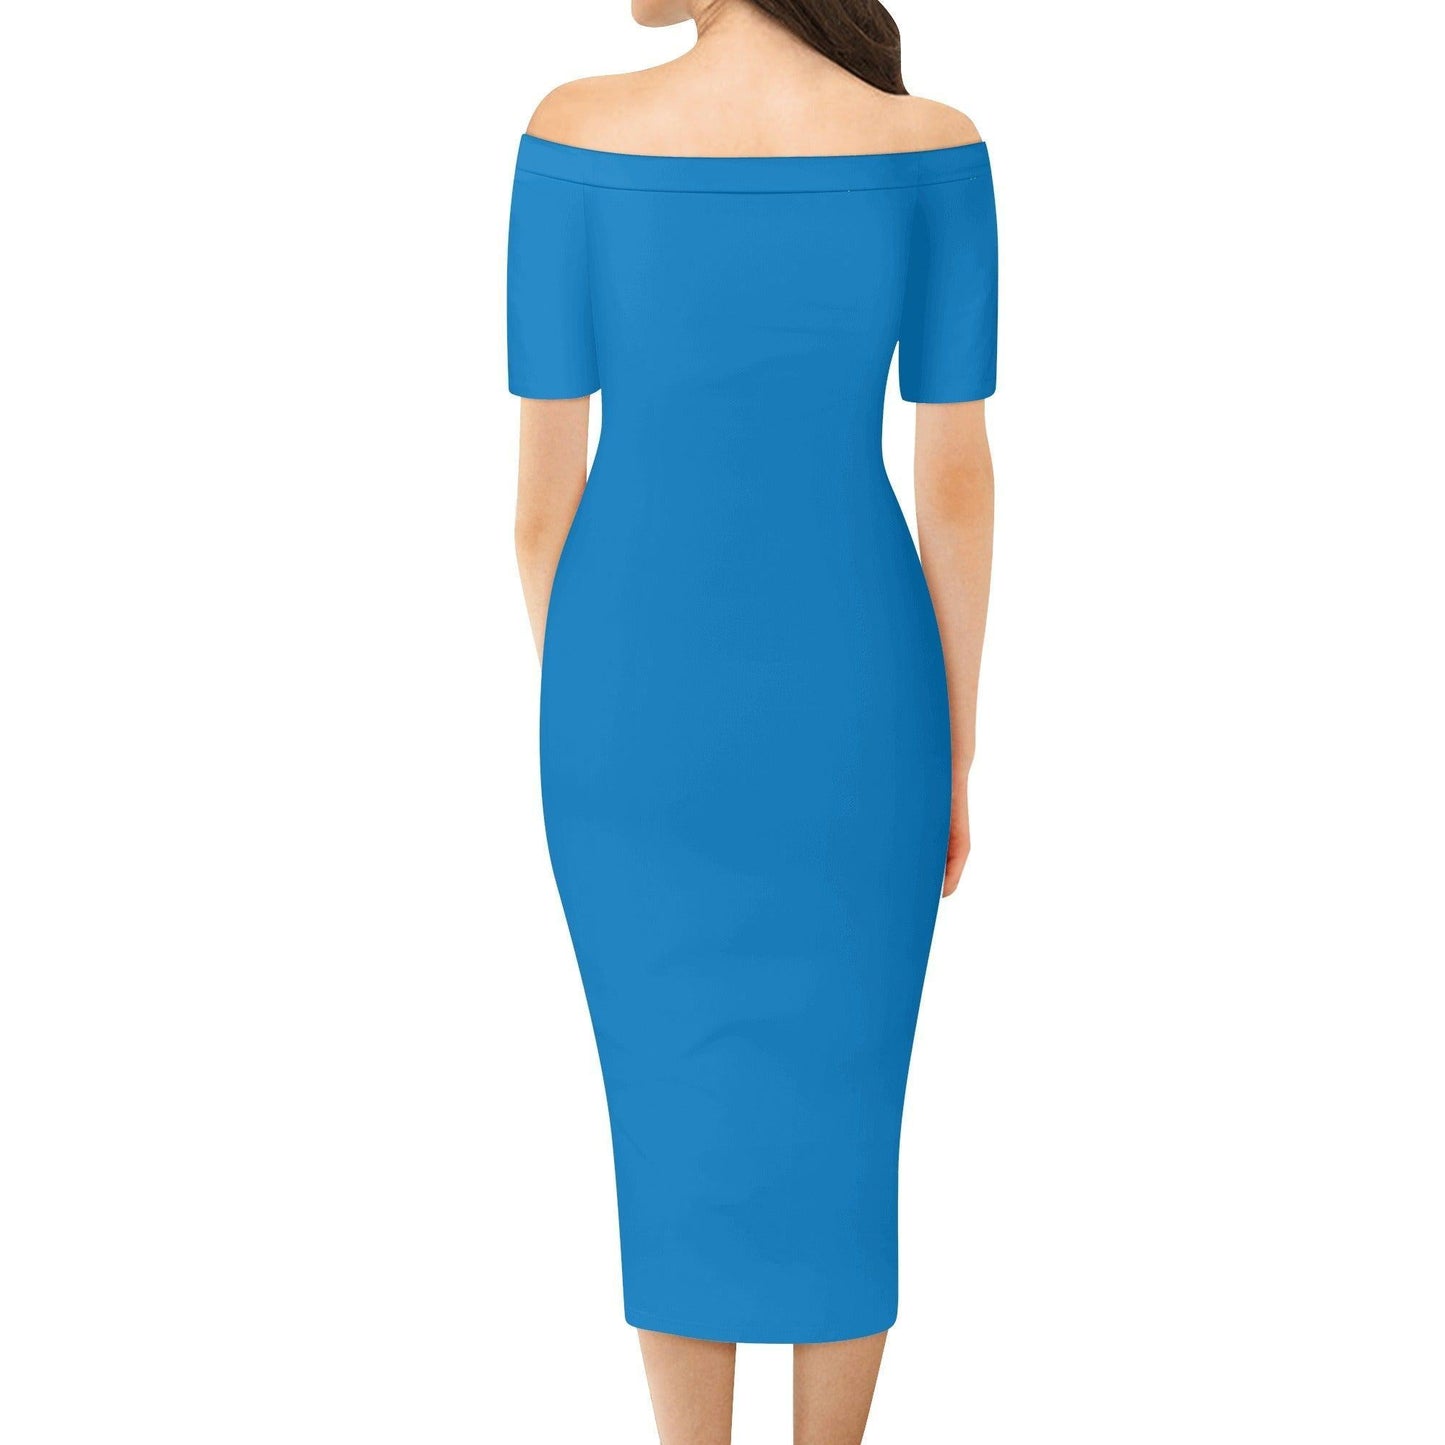 Navy Blue Off-Shoulder-Kleid -- Navy Blue Off-Shoulder-Kleid - undefined Off-Shoulder-Kleid | JLR Design